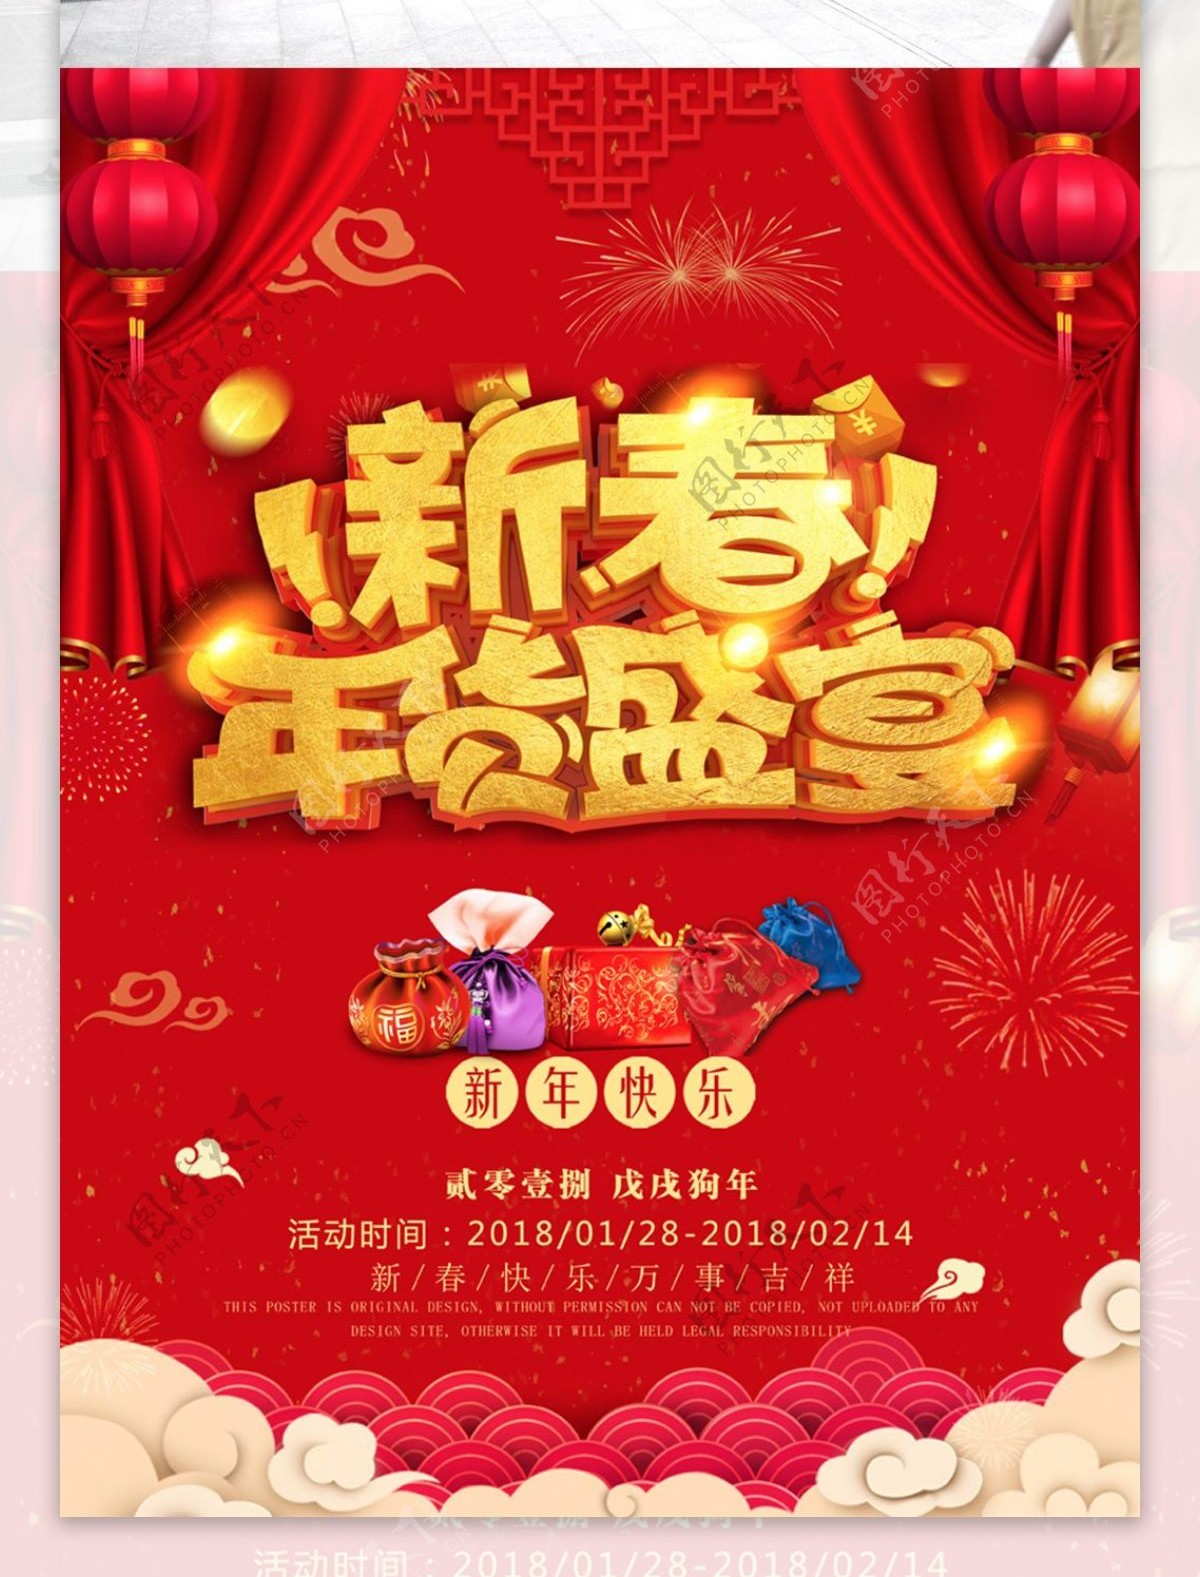 新春年货盛宴红色大气促销海报设计